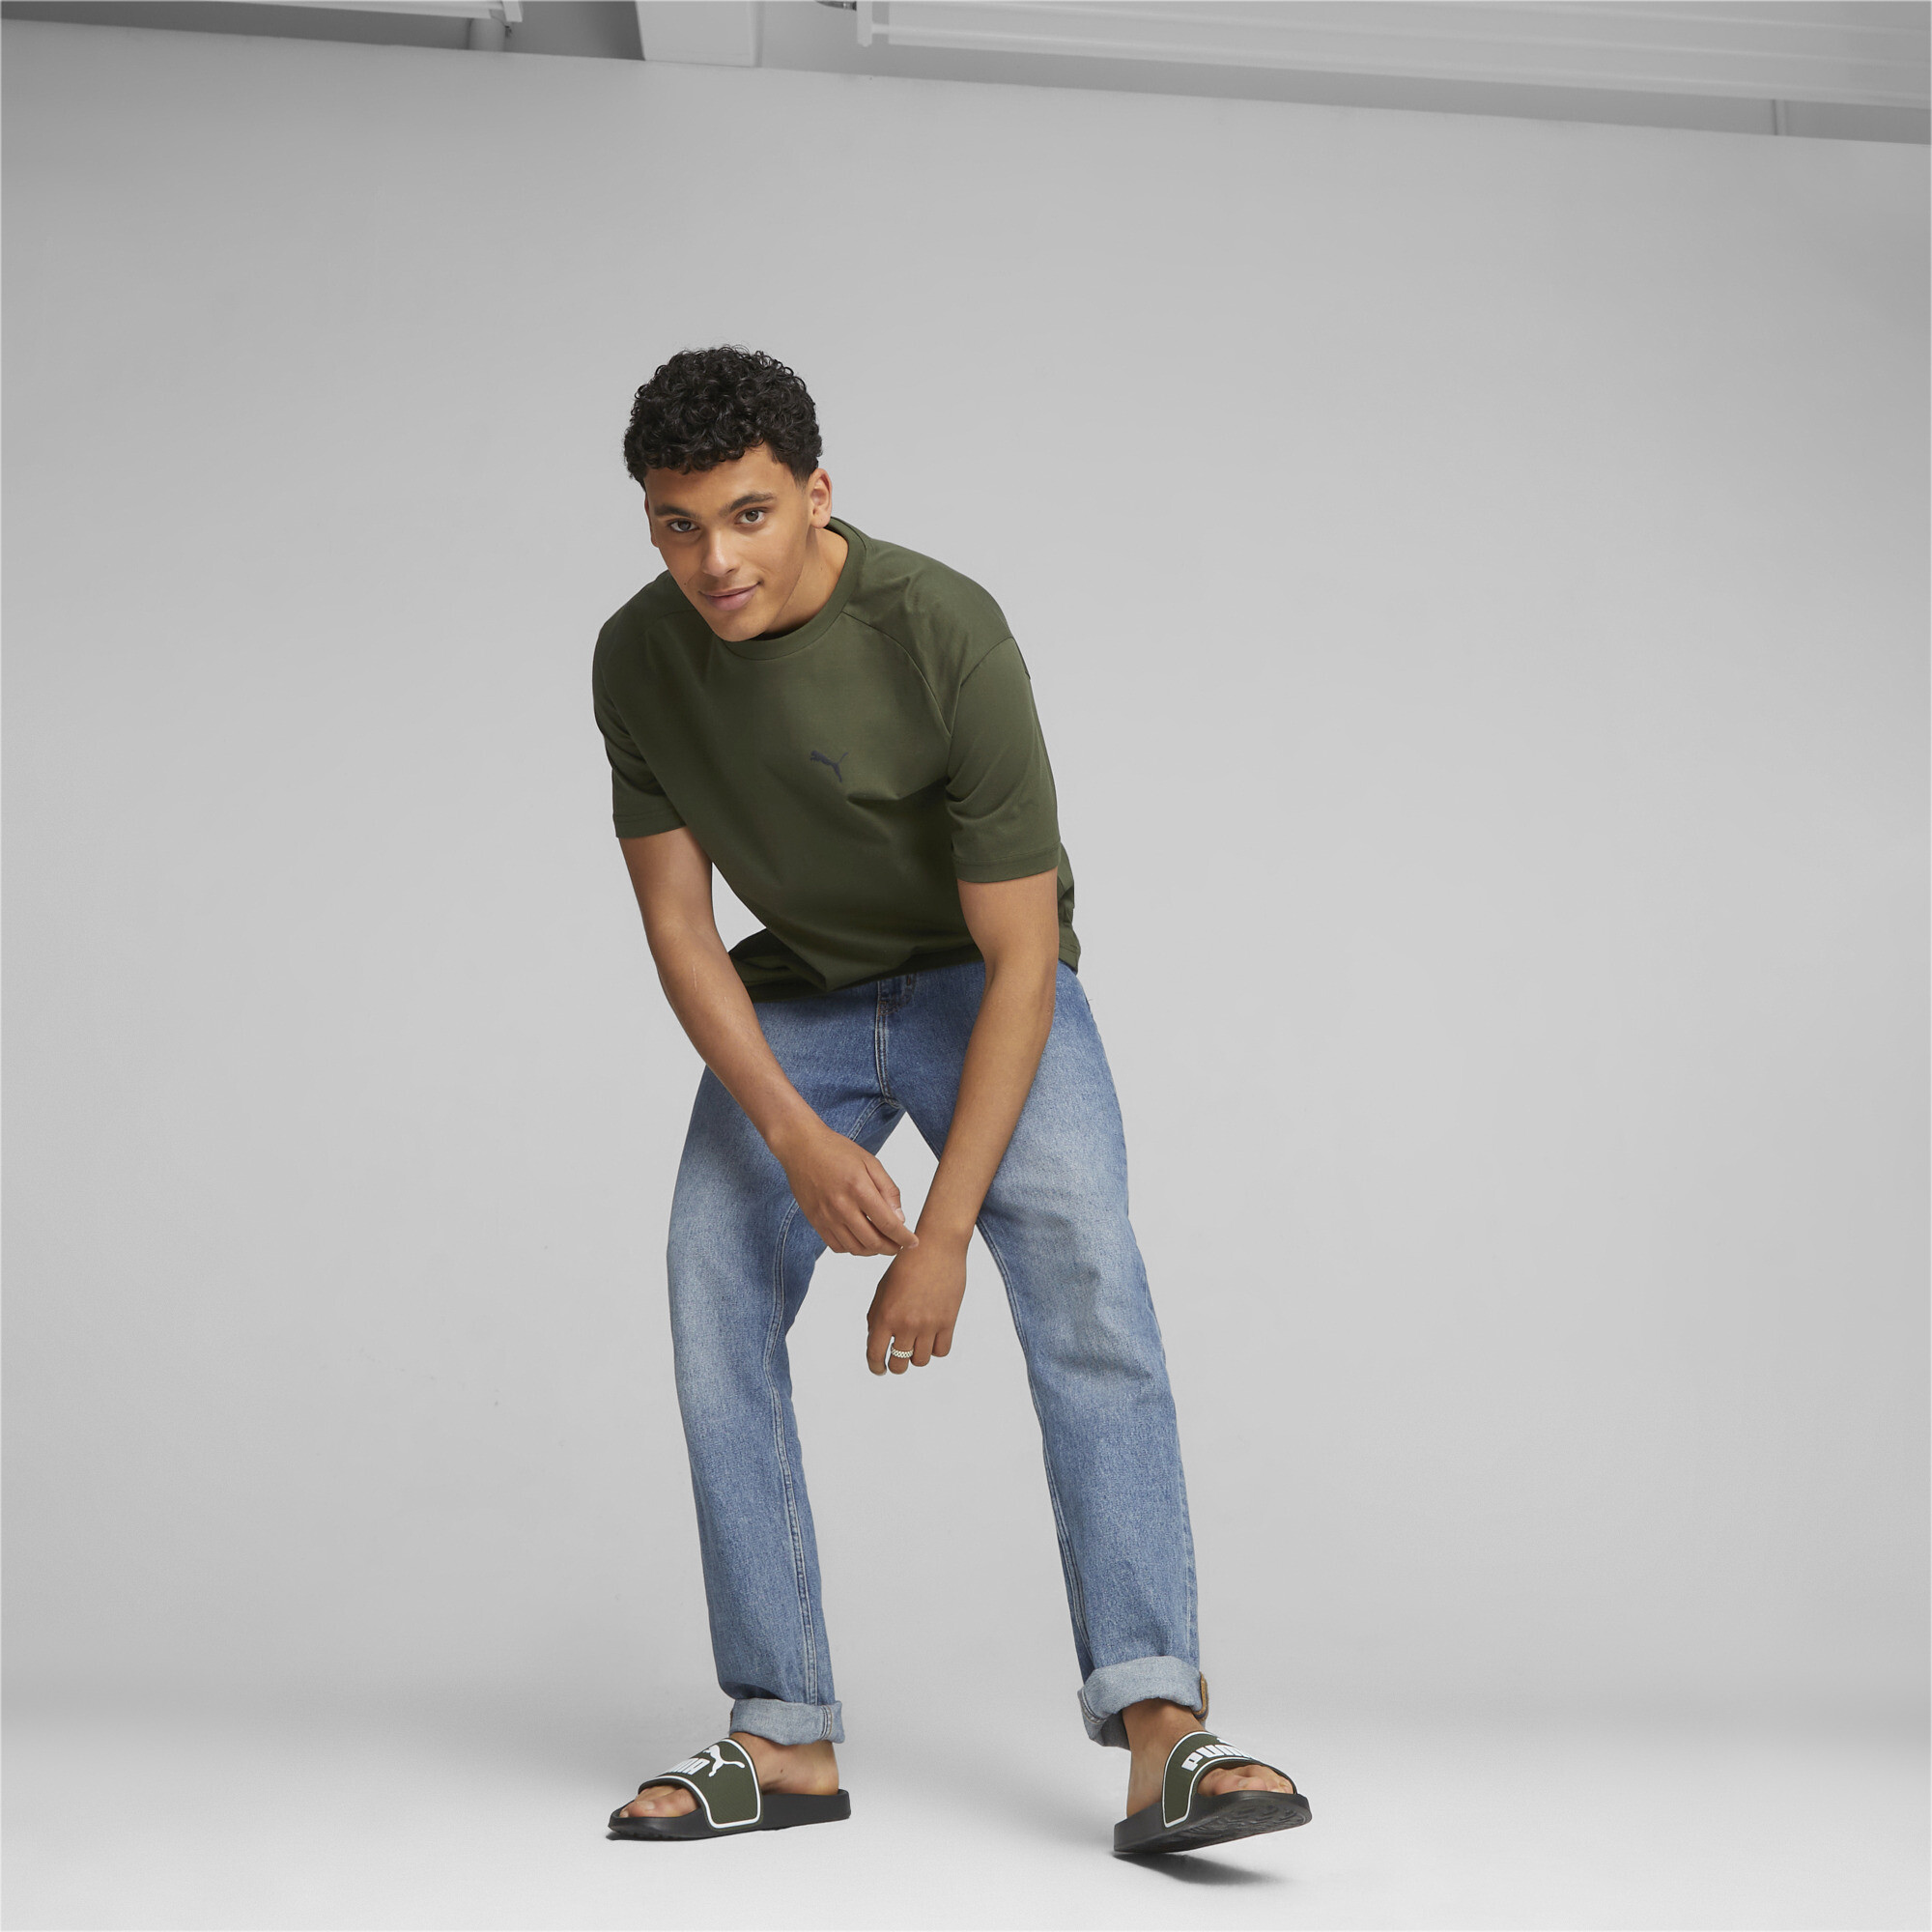 Men's PUMA Leadcat 2.0 Sandals In Green, Size EU 44.5